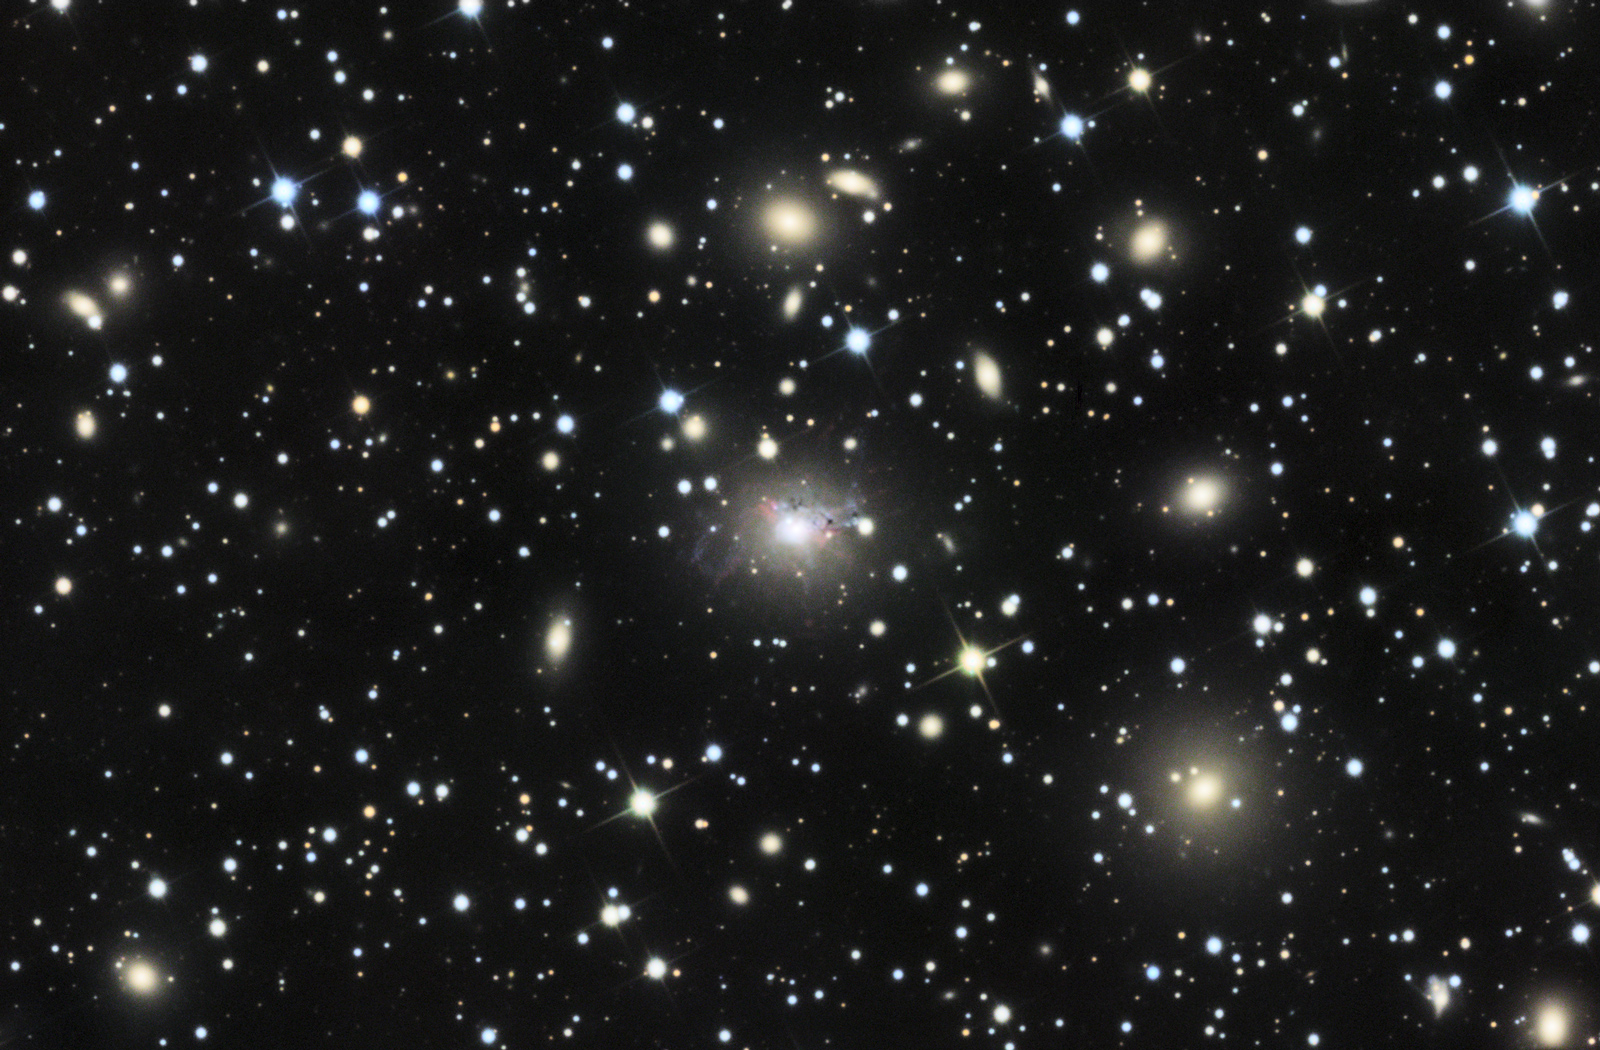 NGC1275